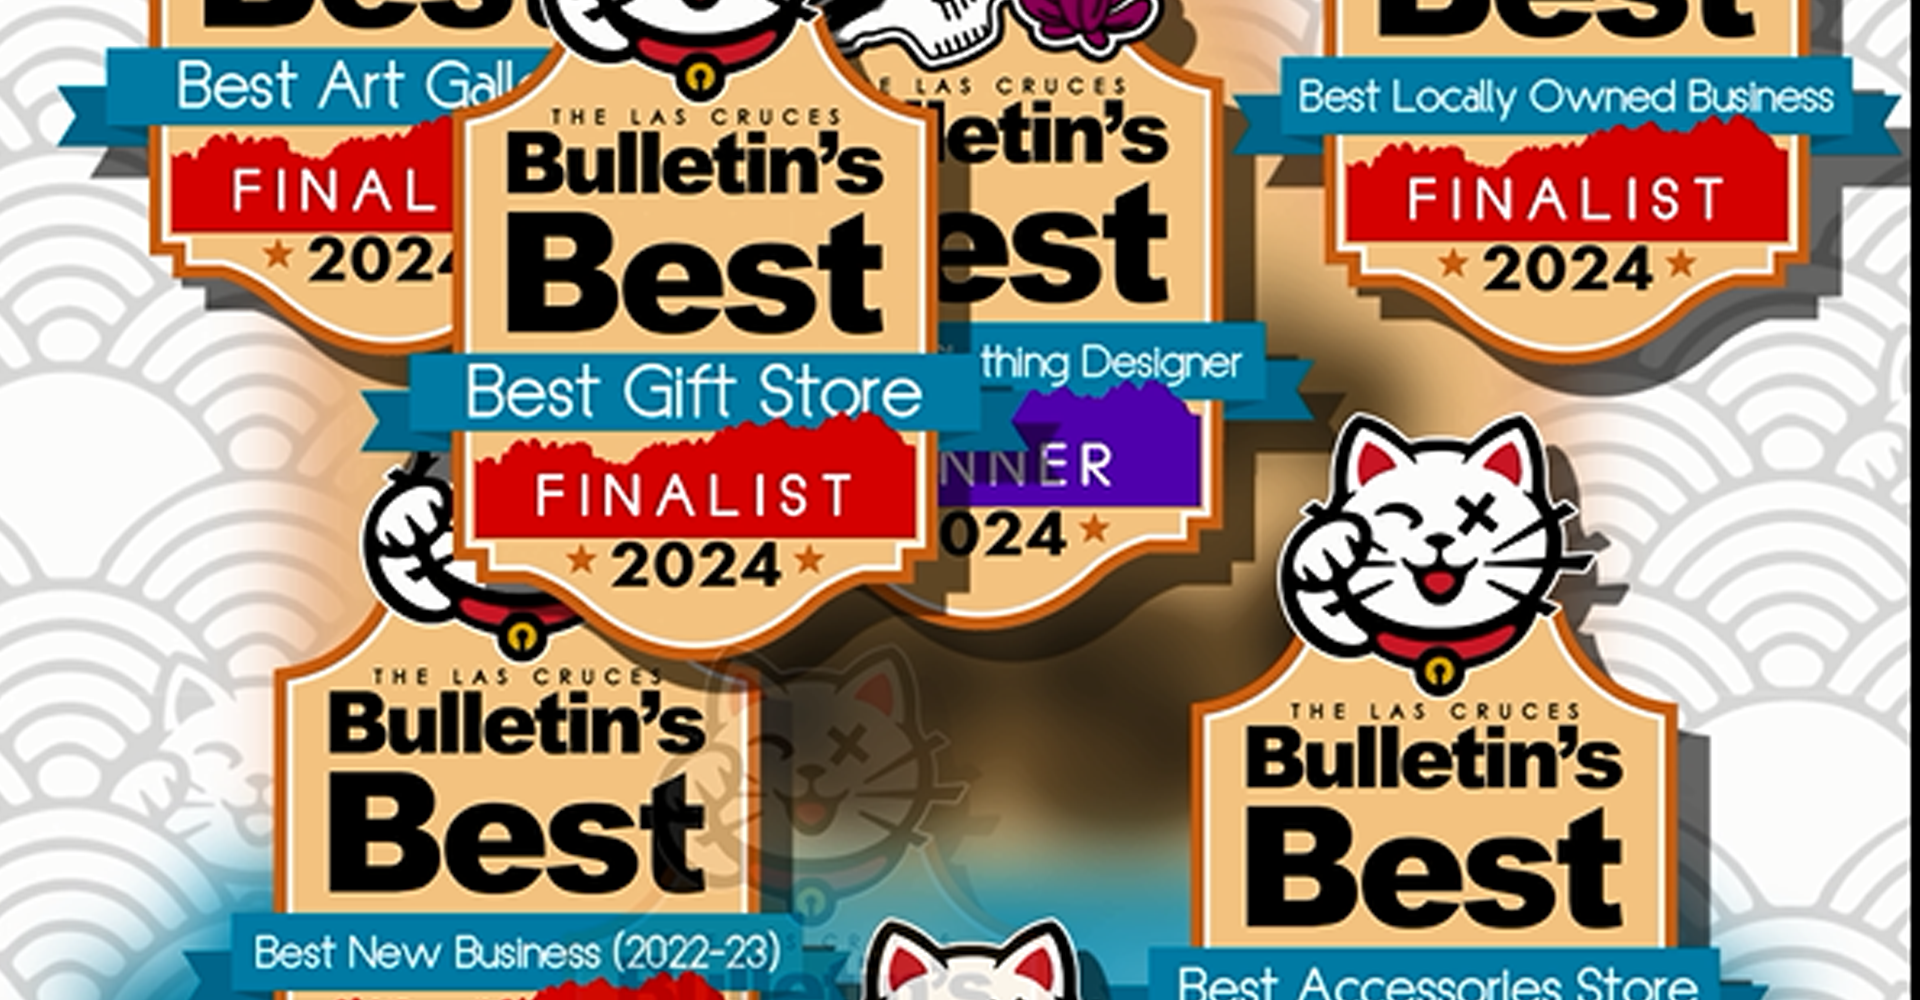 Bulletin's Best Awards